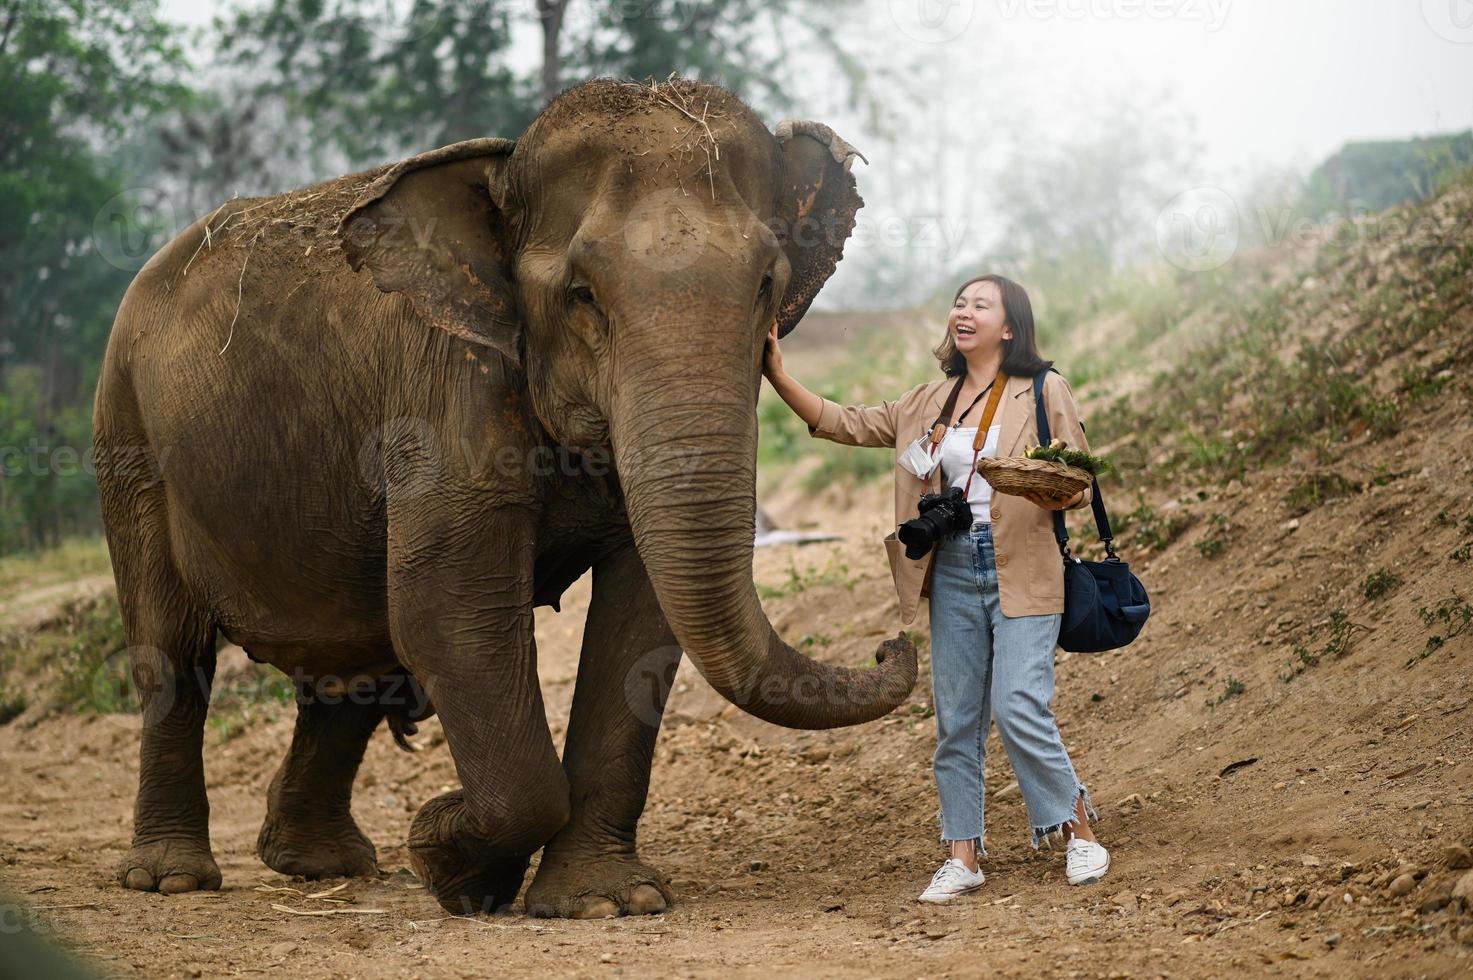 vrouwelijke toeristen voeren de olifanten op een leuke manier. foto